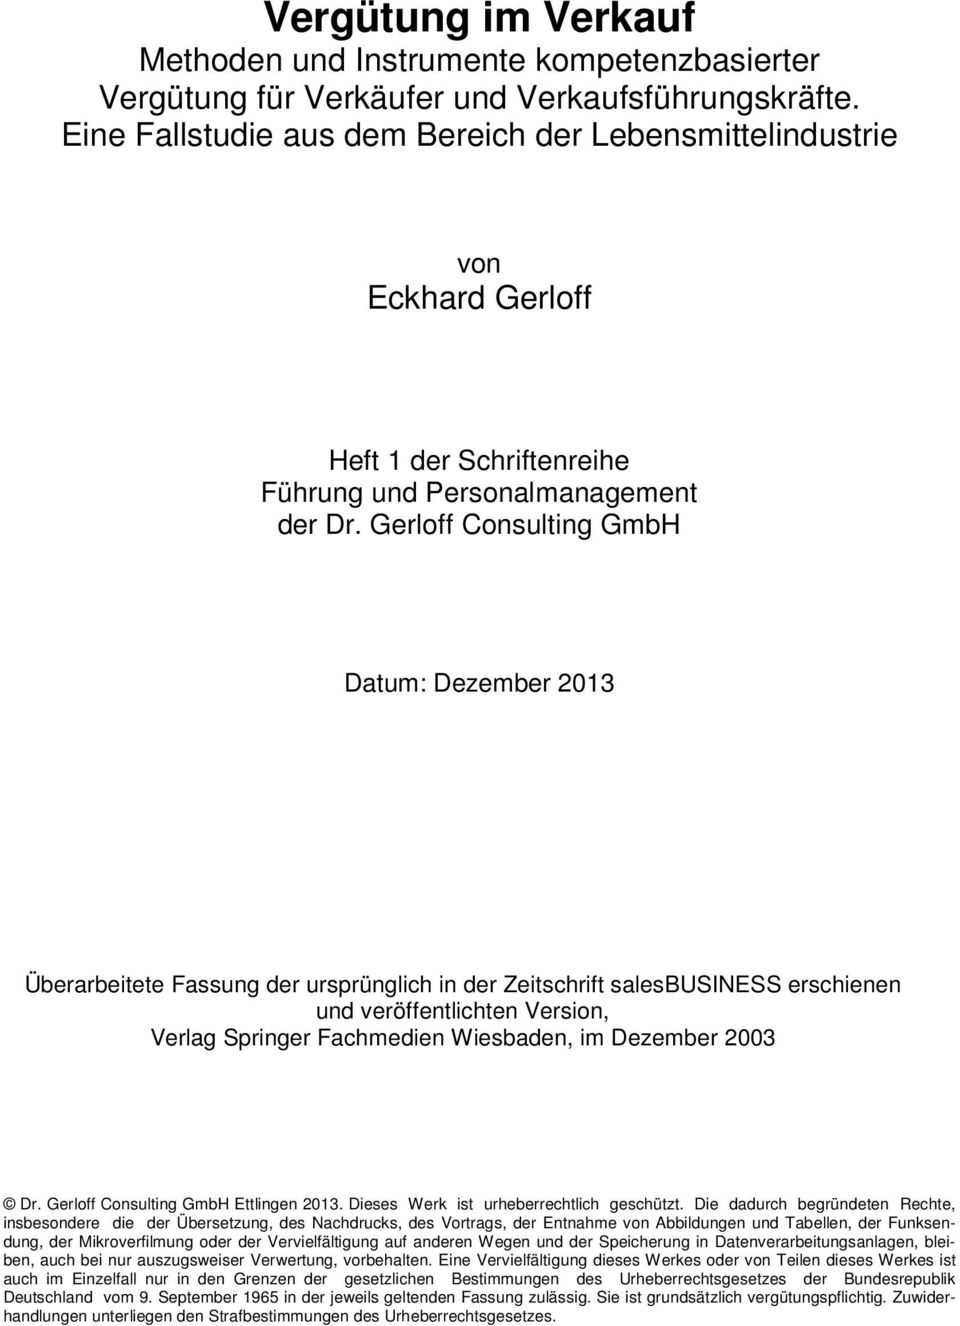 Gerloff Consulting GmbH Datum: Dezember 2013 Überarbeitete Fassung der ursprünglich in der Zeitschrift salesbusiness erschienen und veröffentlichten Version, Verlag Springer Fachmedien Wiesbaden, im